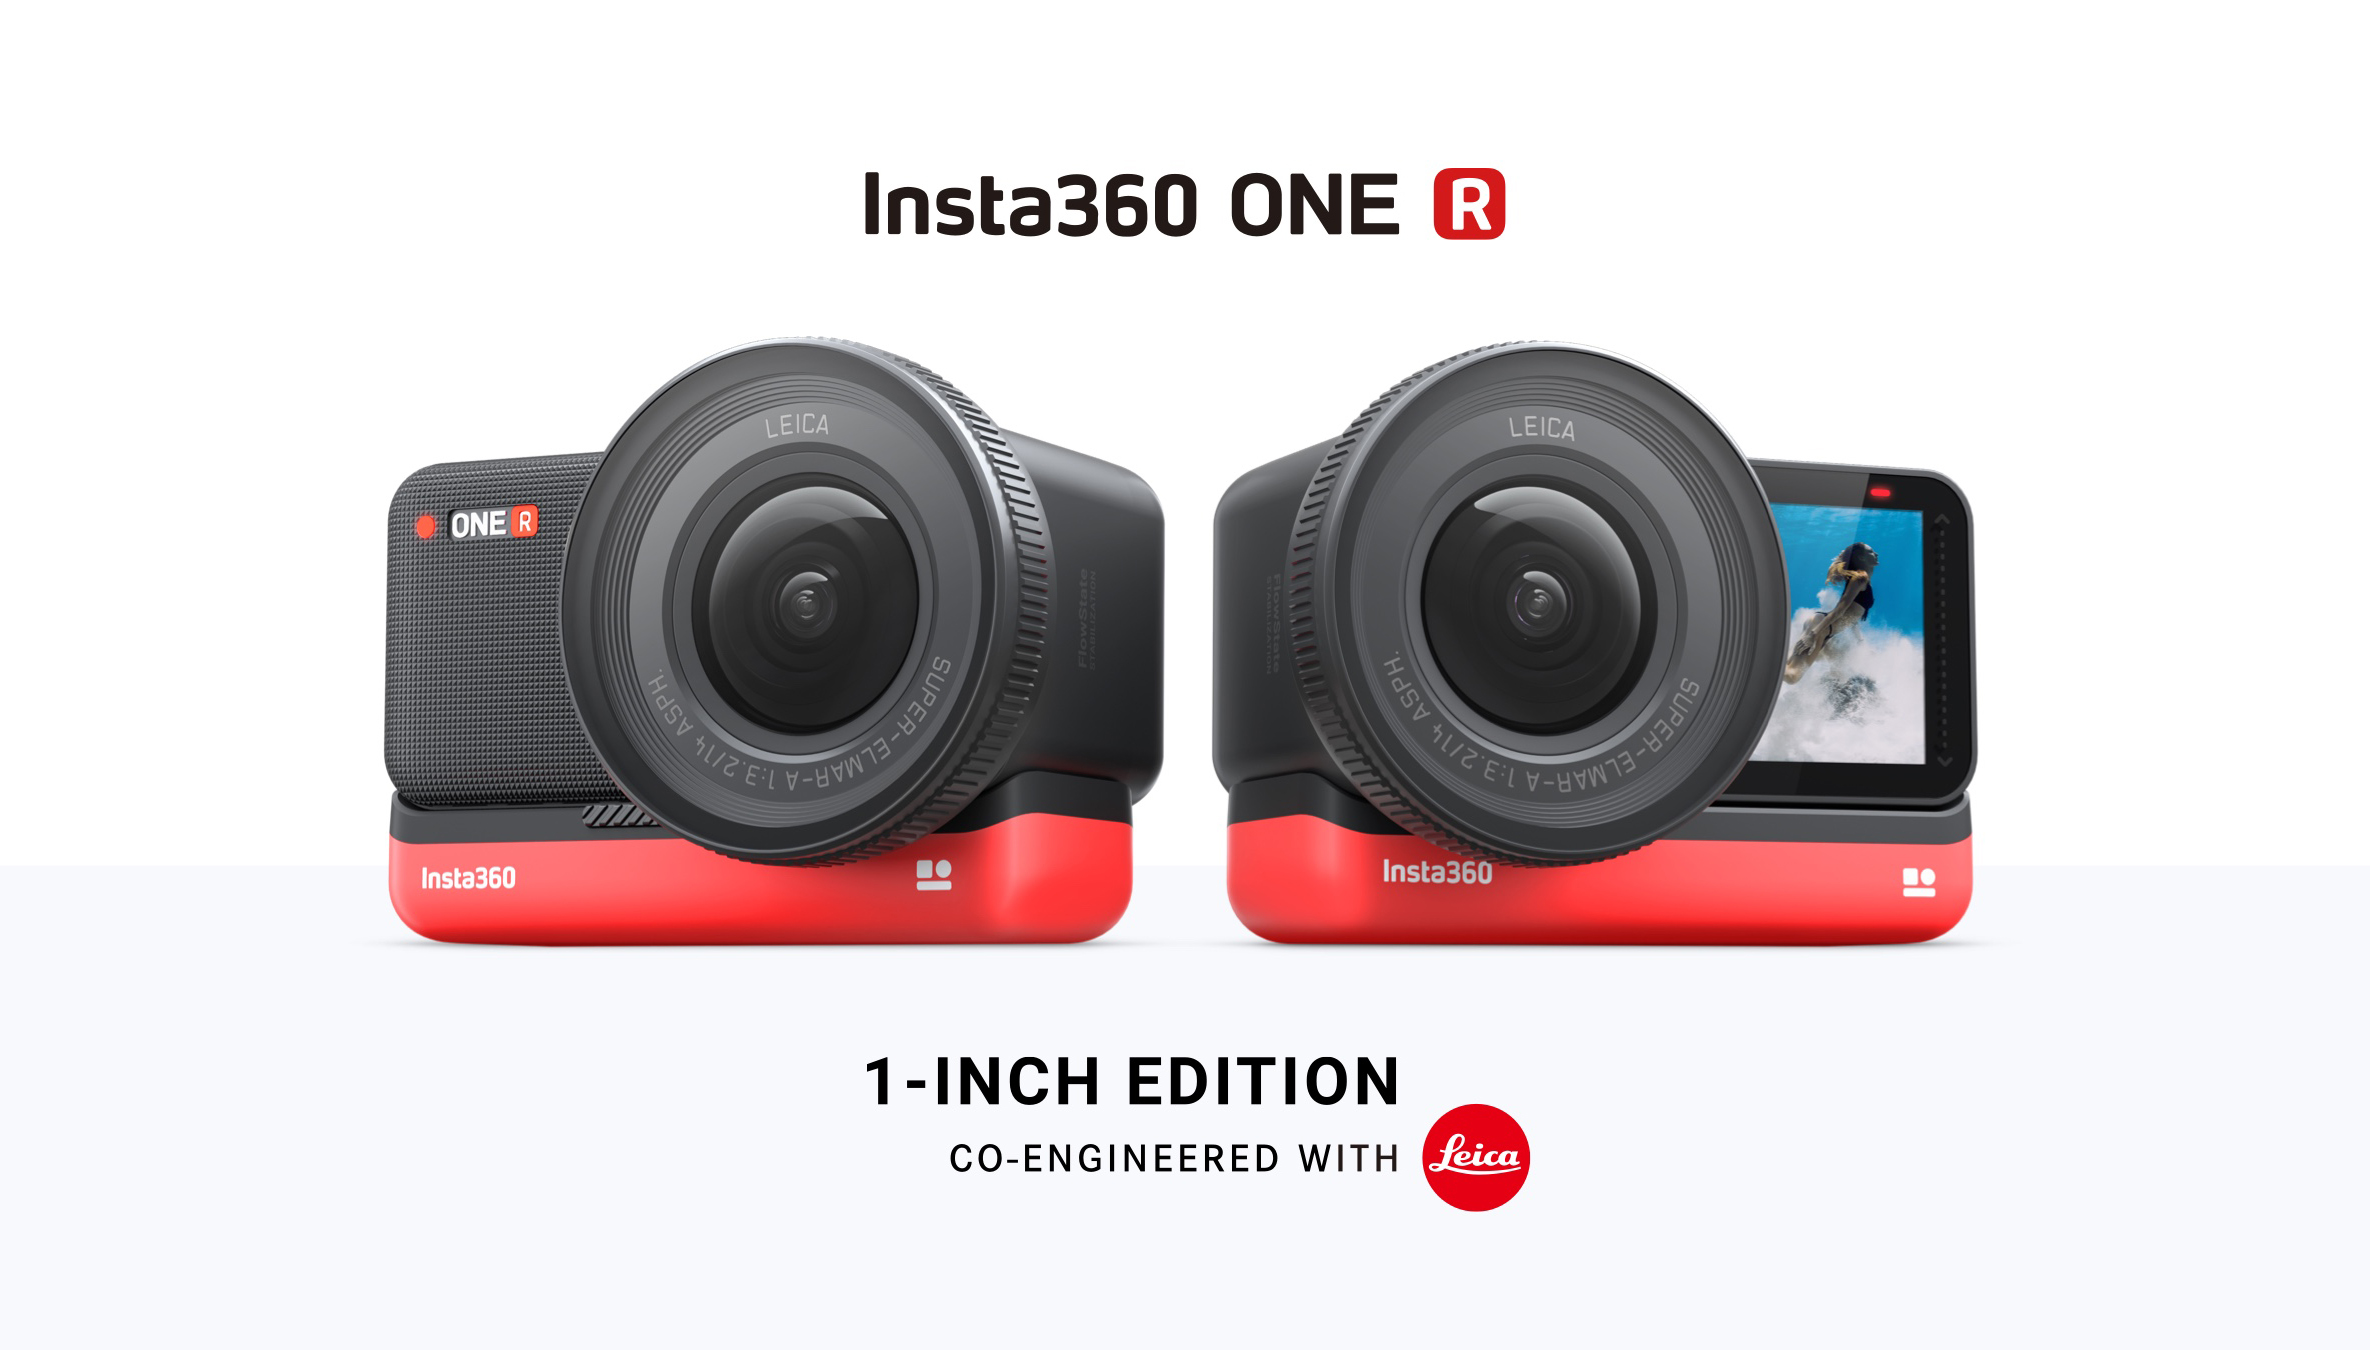 Zusammen mit Leica entwickelt: Insta360 ONE R 1-Inch Edition